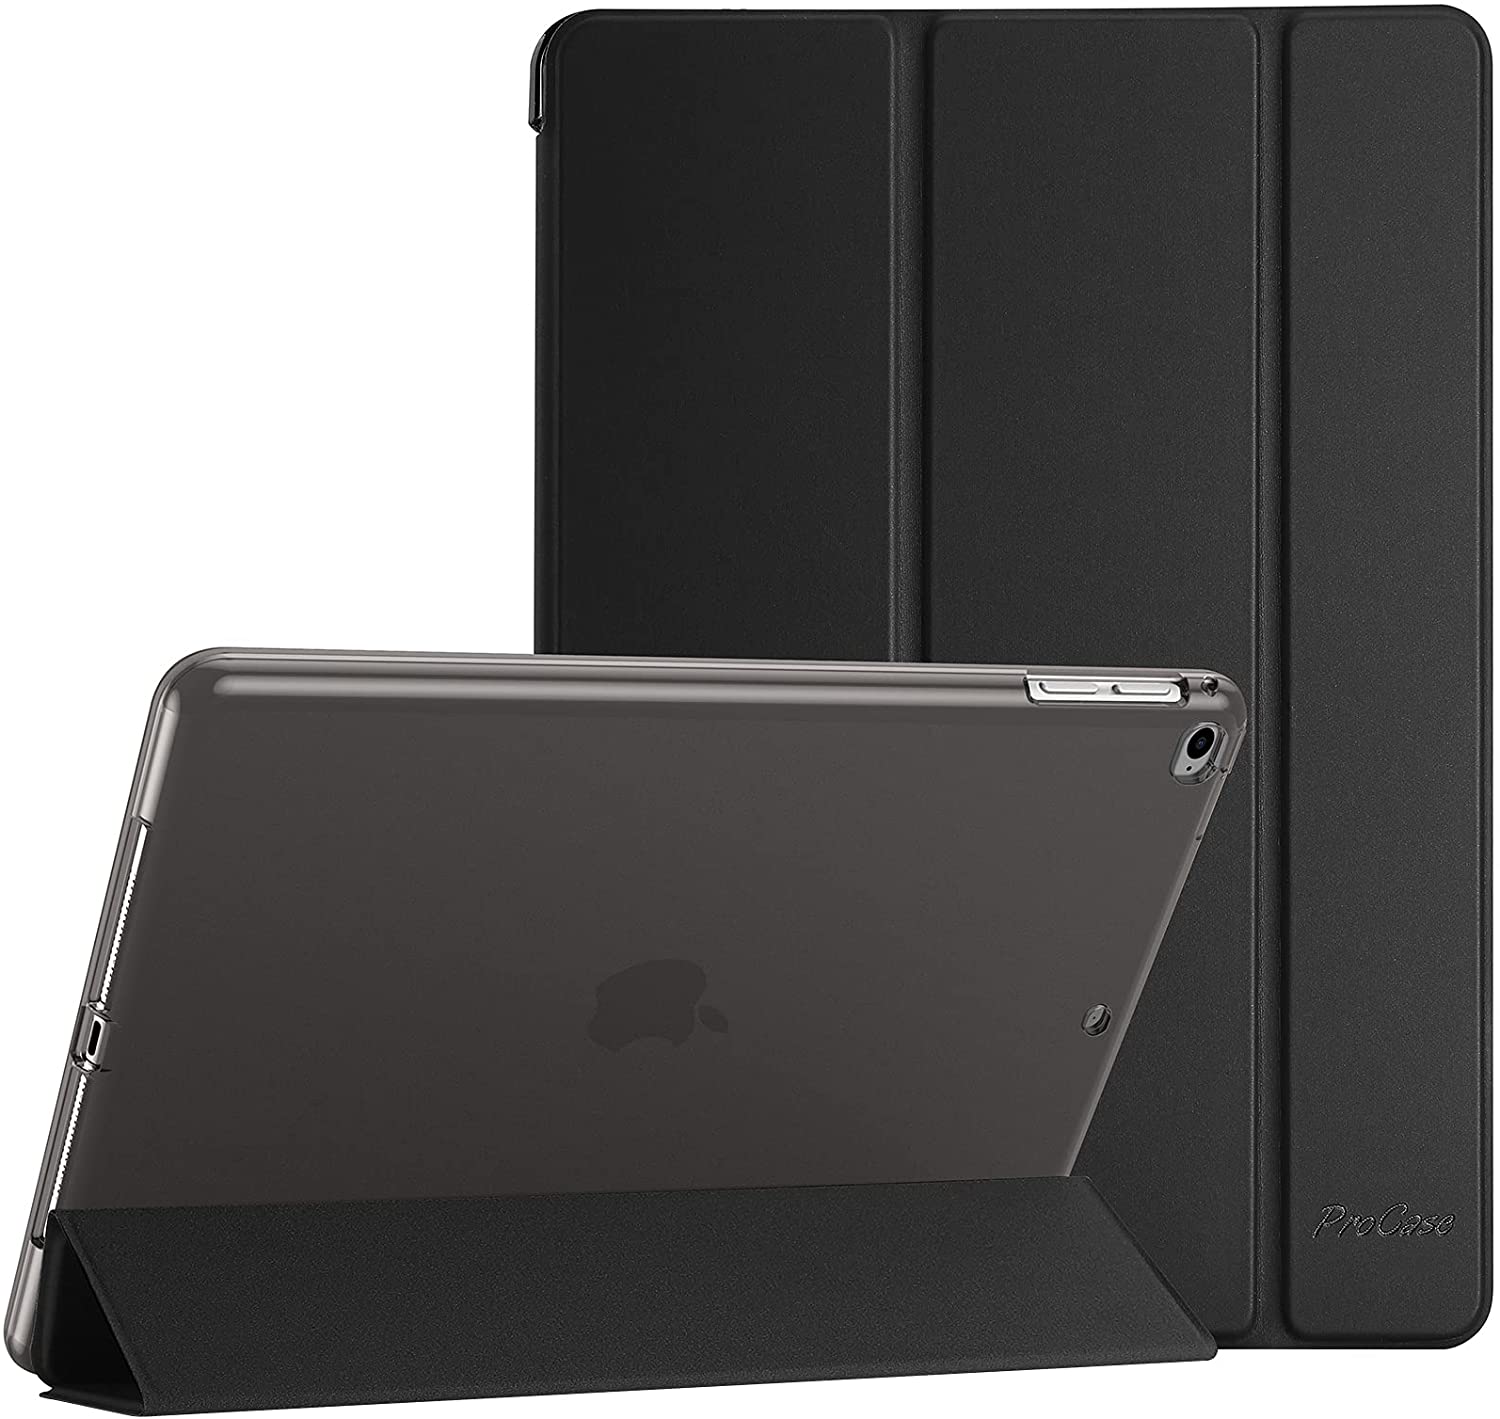 iPad Air 2 Cases – Procase